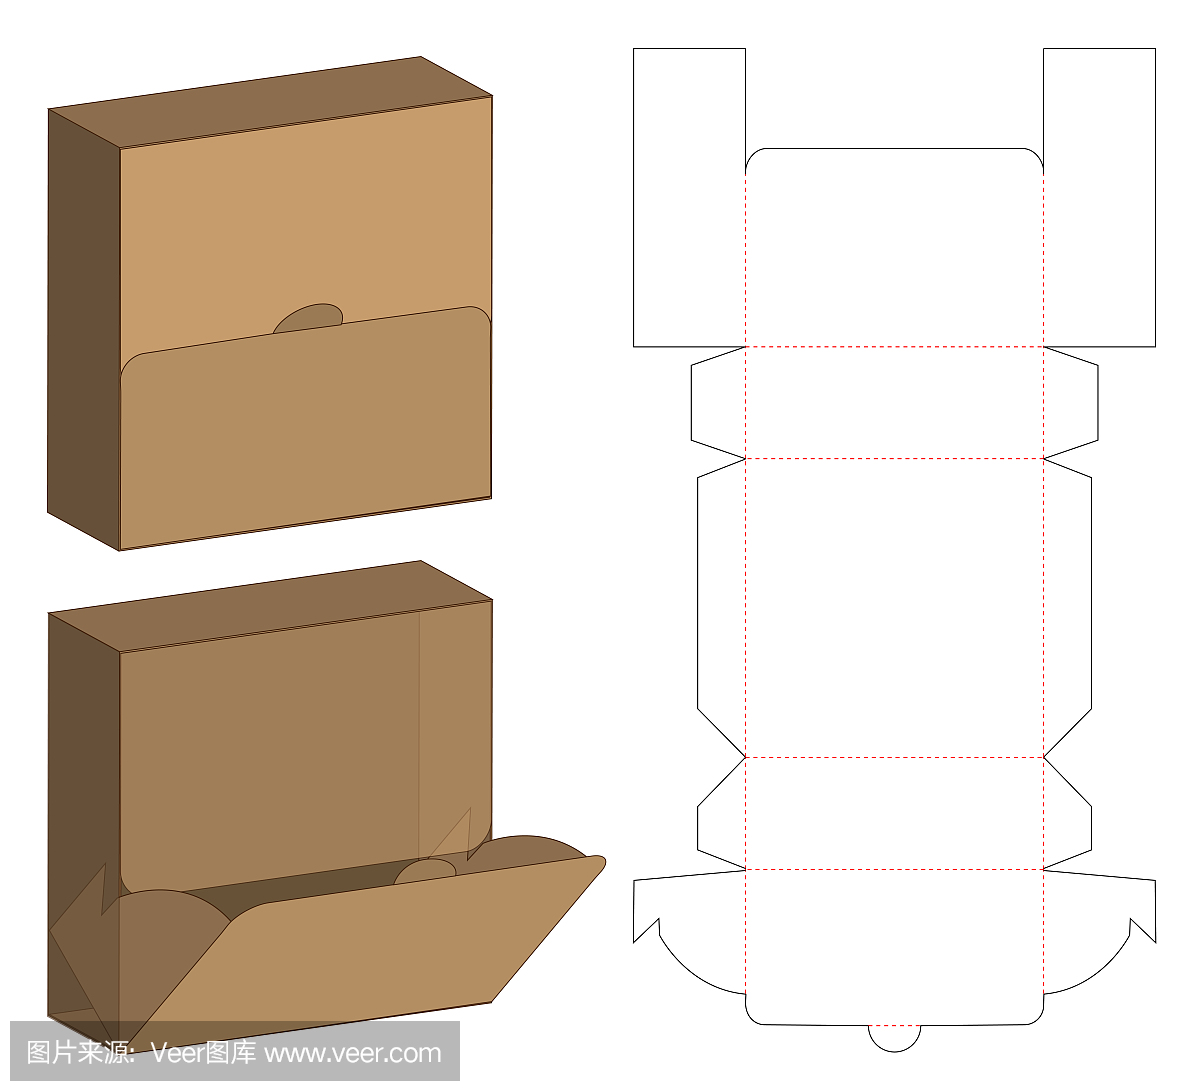 包装盒模切模板设计。三维模型